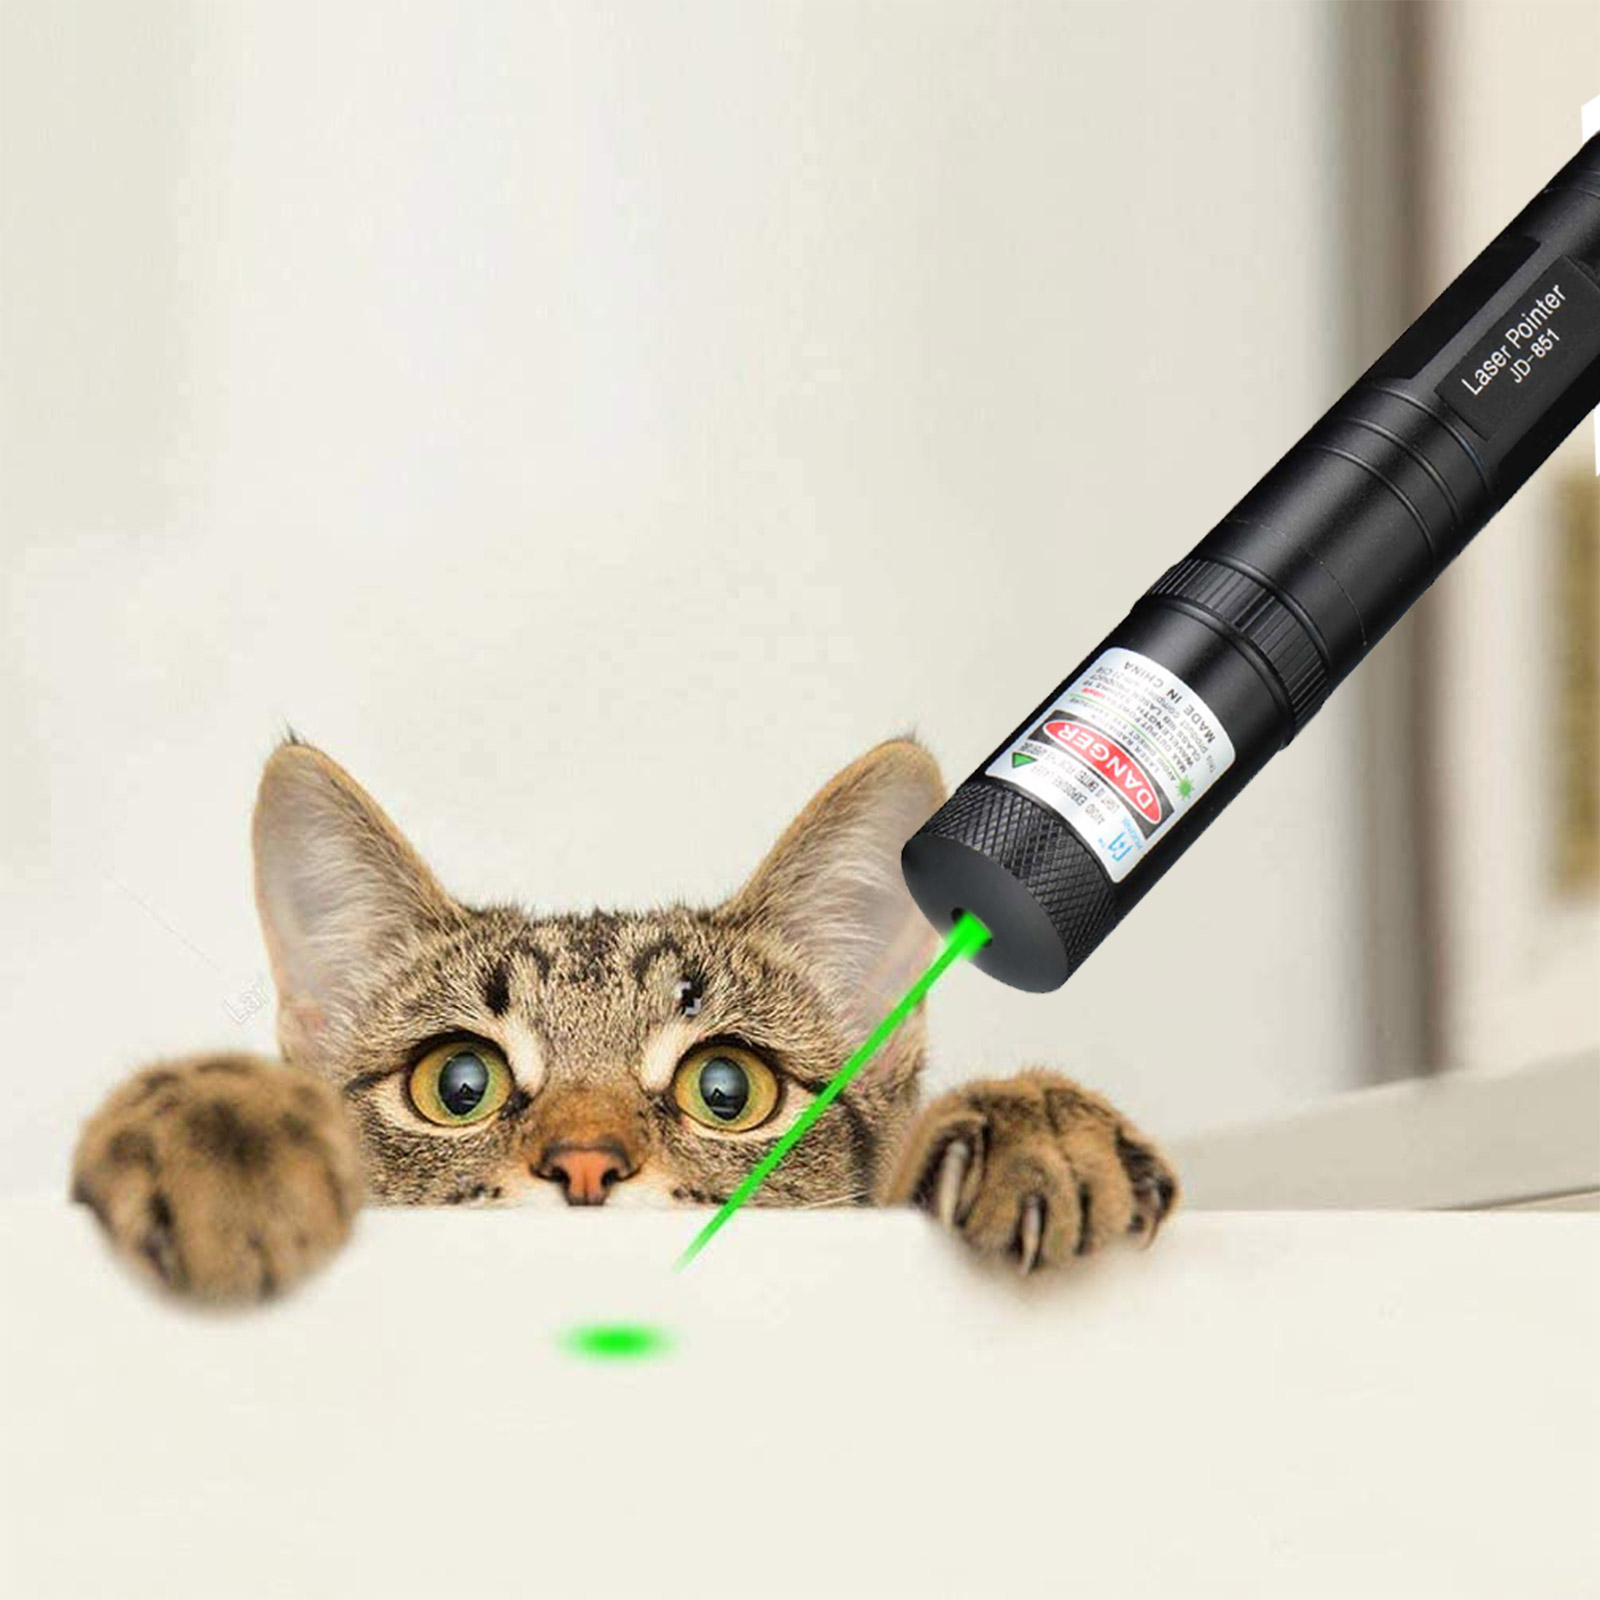 2X 990Mile Green Laser Pointer Pen Light Astronomy Strong Laser Beam Light 